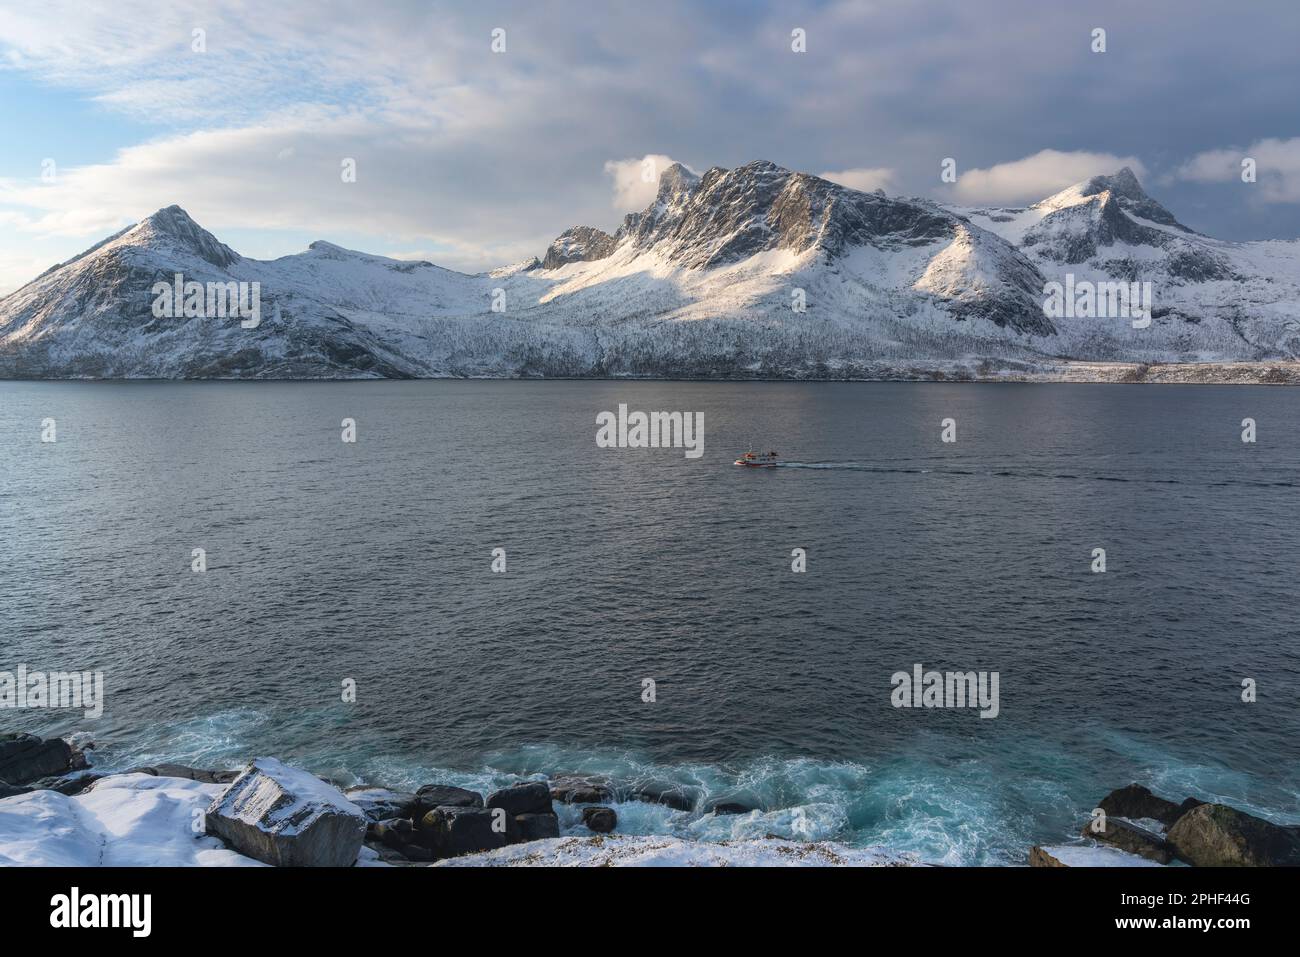 Fischer am Morgen, Schiff im Øyfjorden, mit den schneebedeckten Bergen von Senja, genannt Segla, Kongan und Skultran im Hintergrund. Norwegen Stock Photo